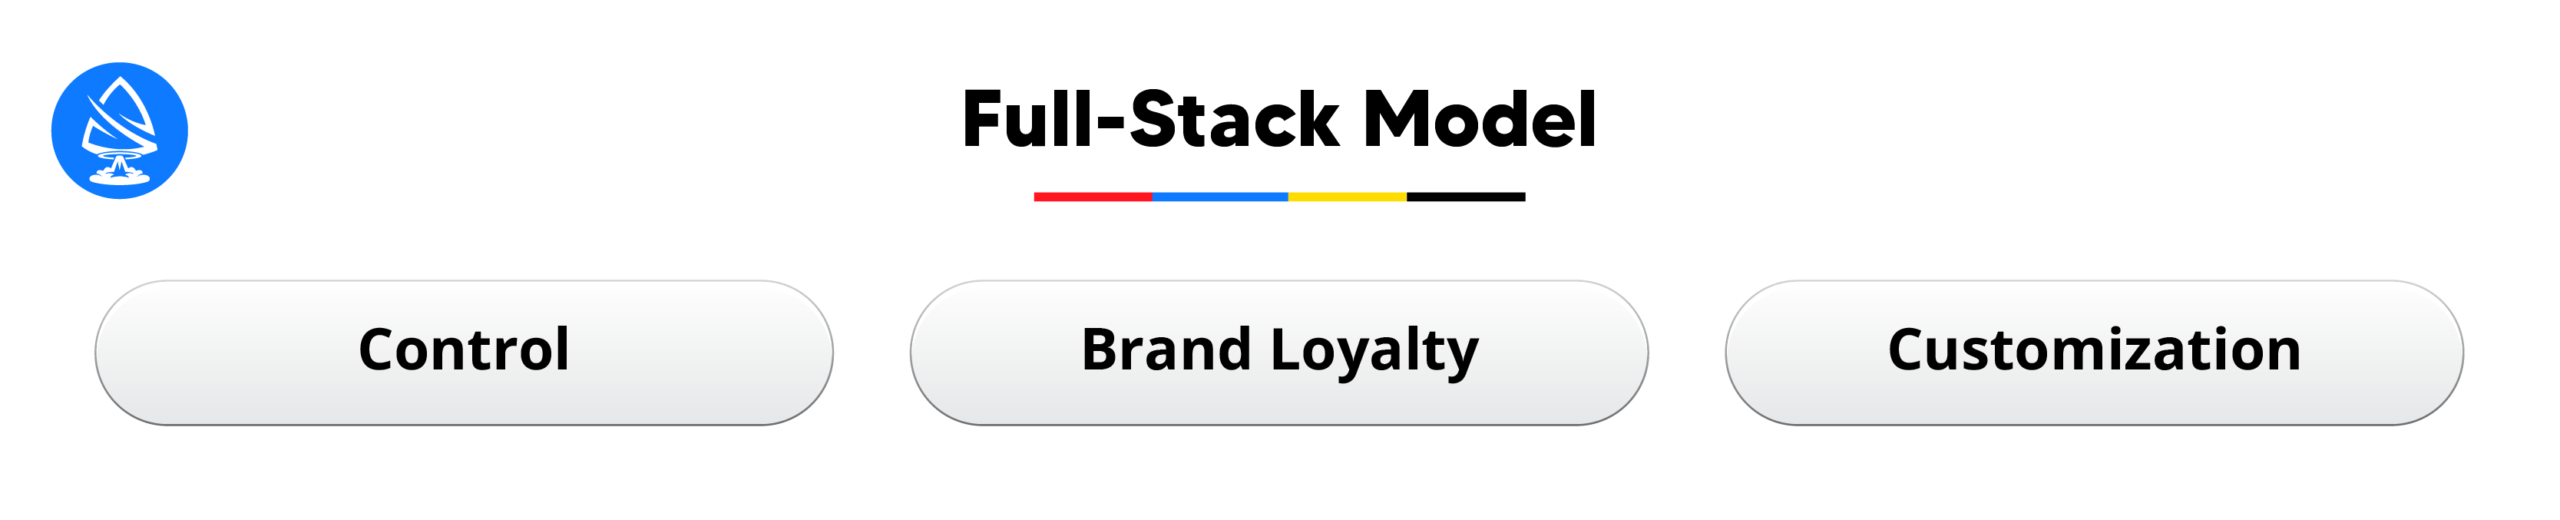 Full-Stack Model